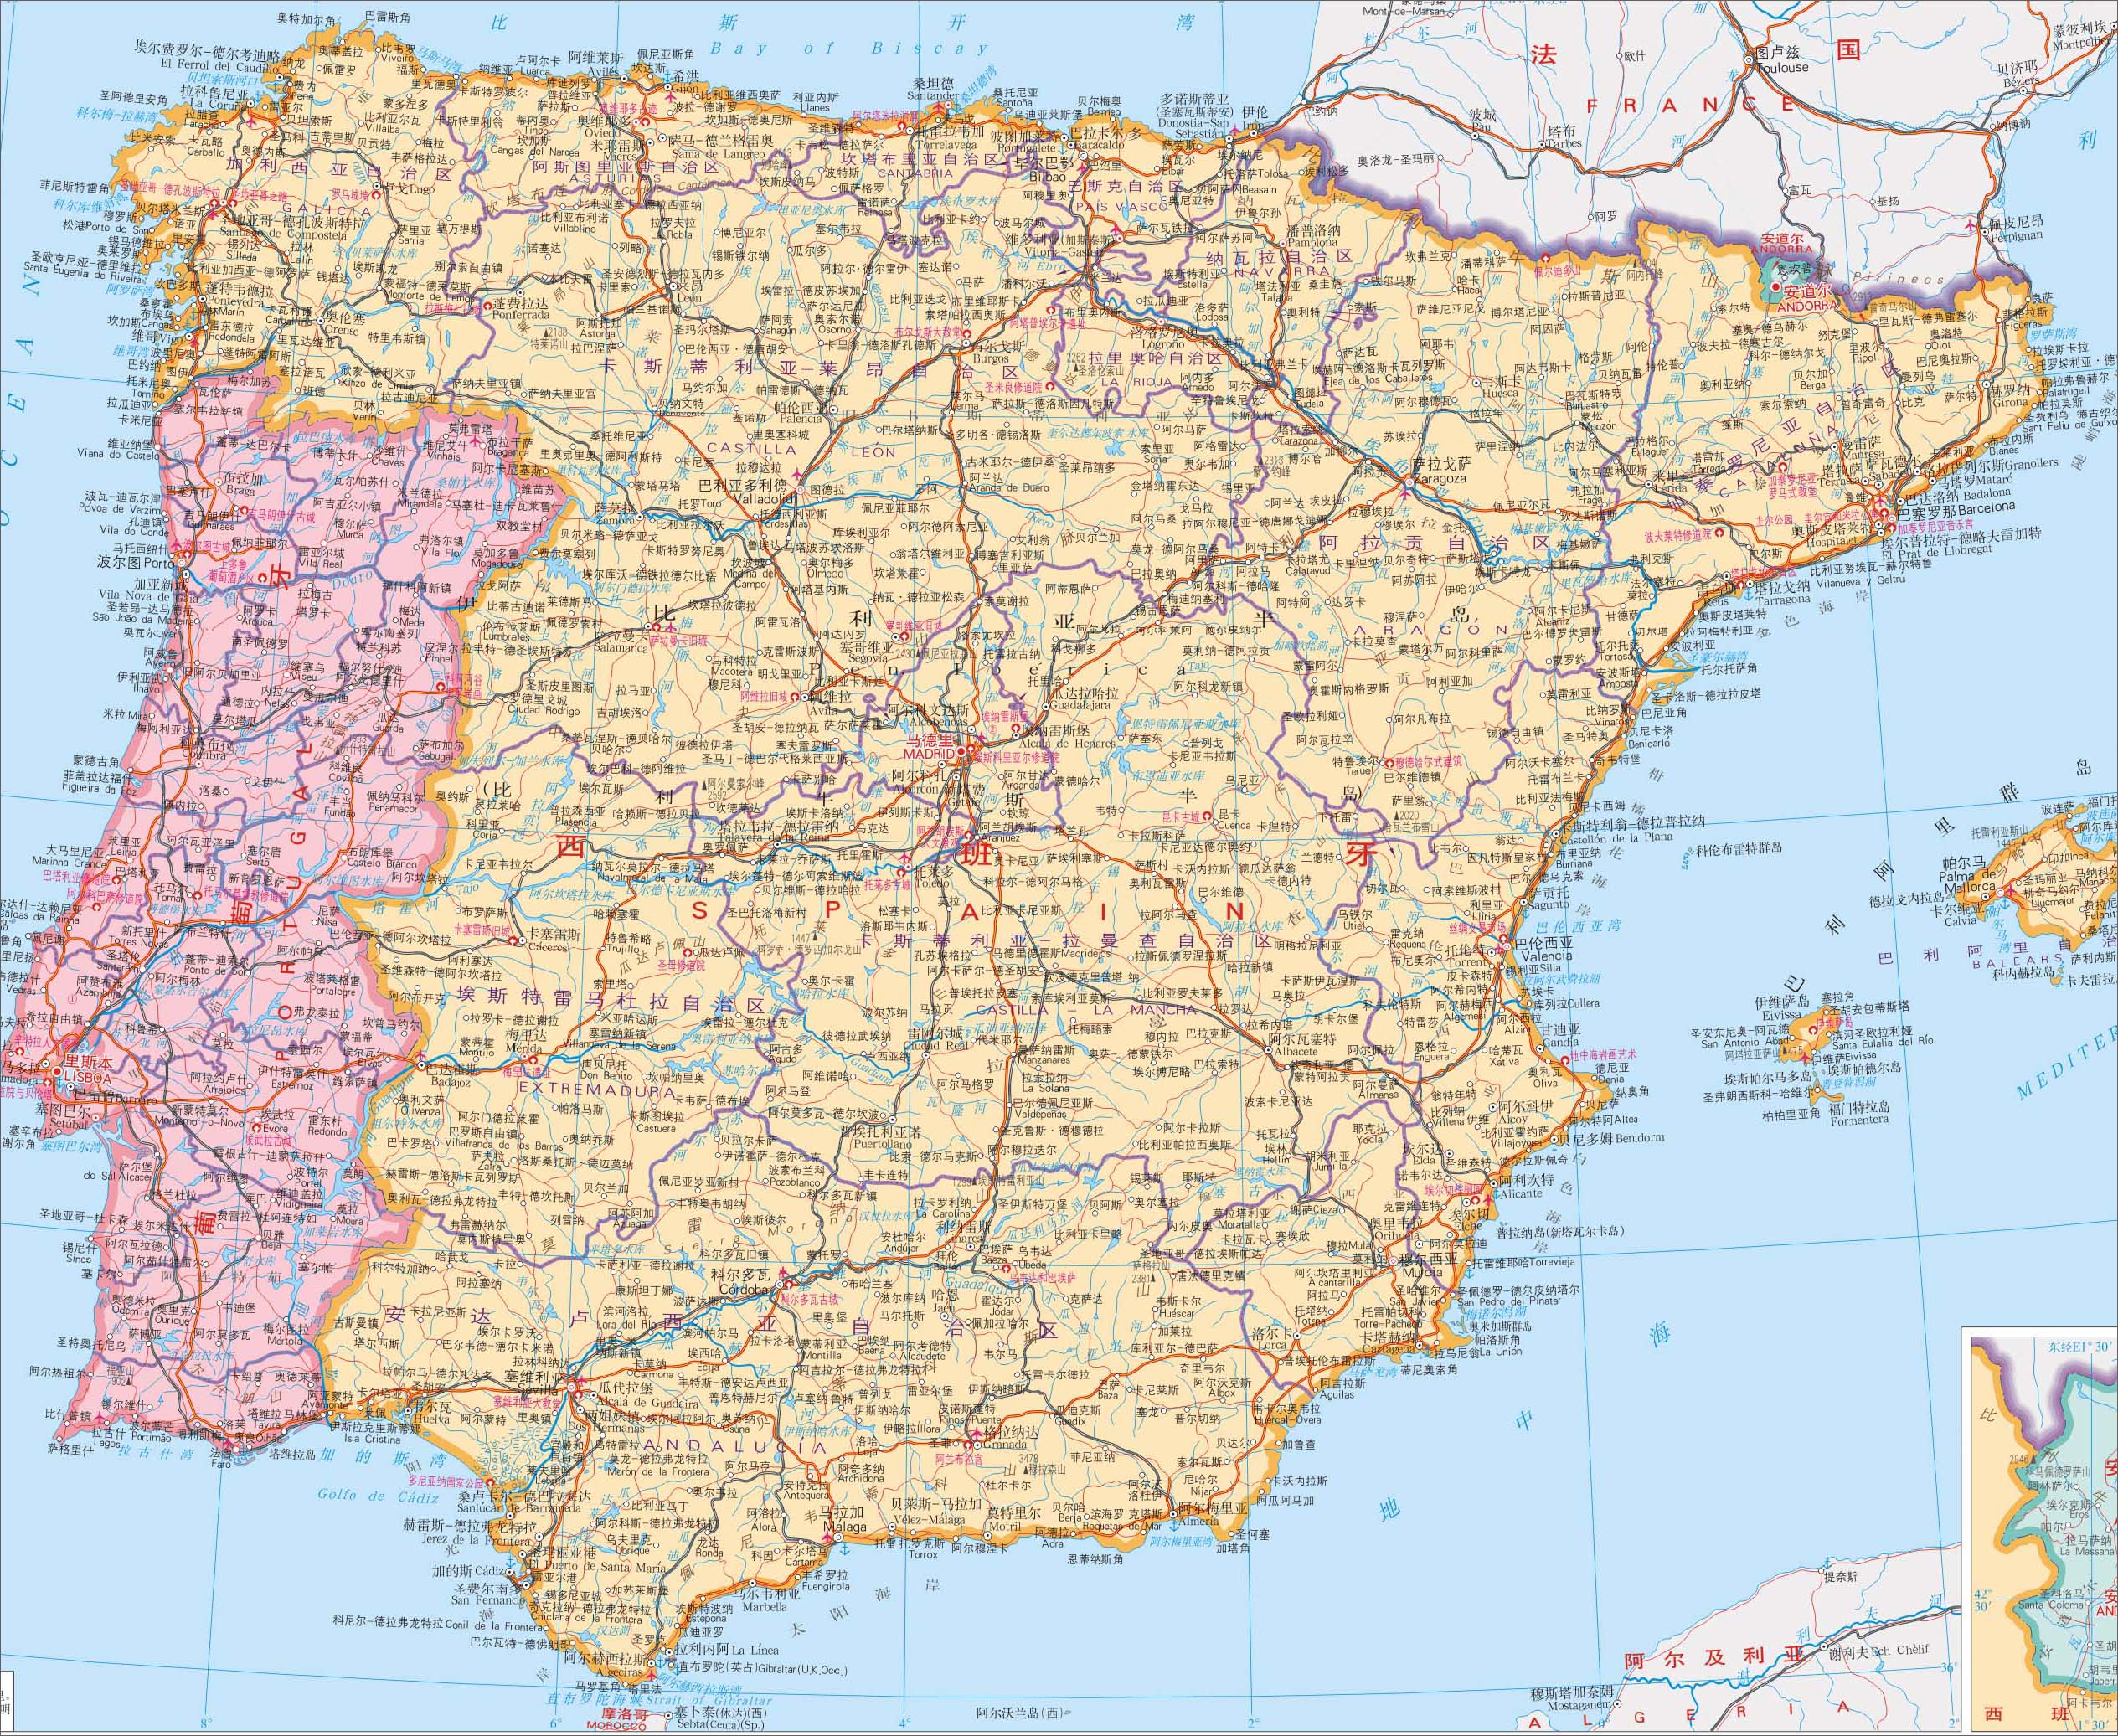 西班牙地图高清版大图 如何讲课